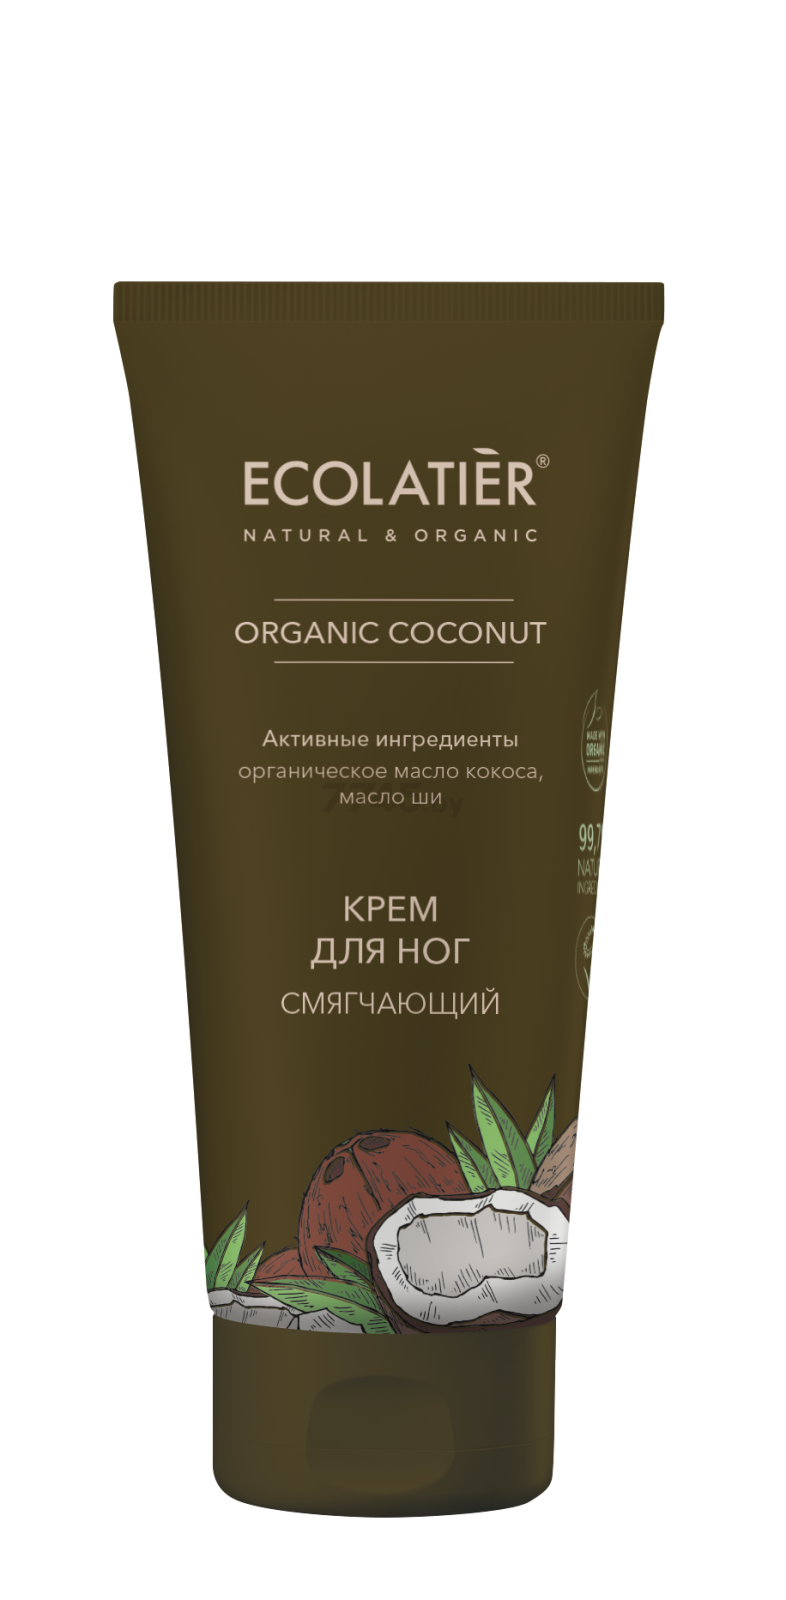 Крем для ног ECOLATIER Organic Coconut Смягчающий 100 мл (4620046173825)